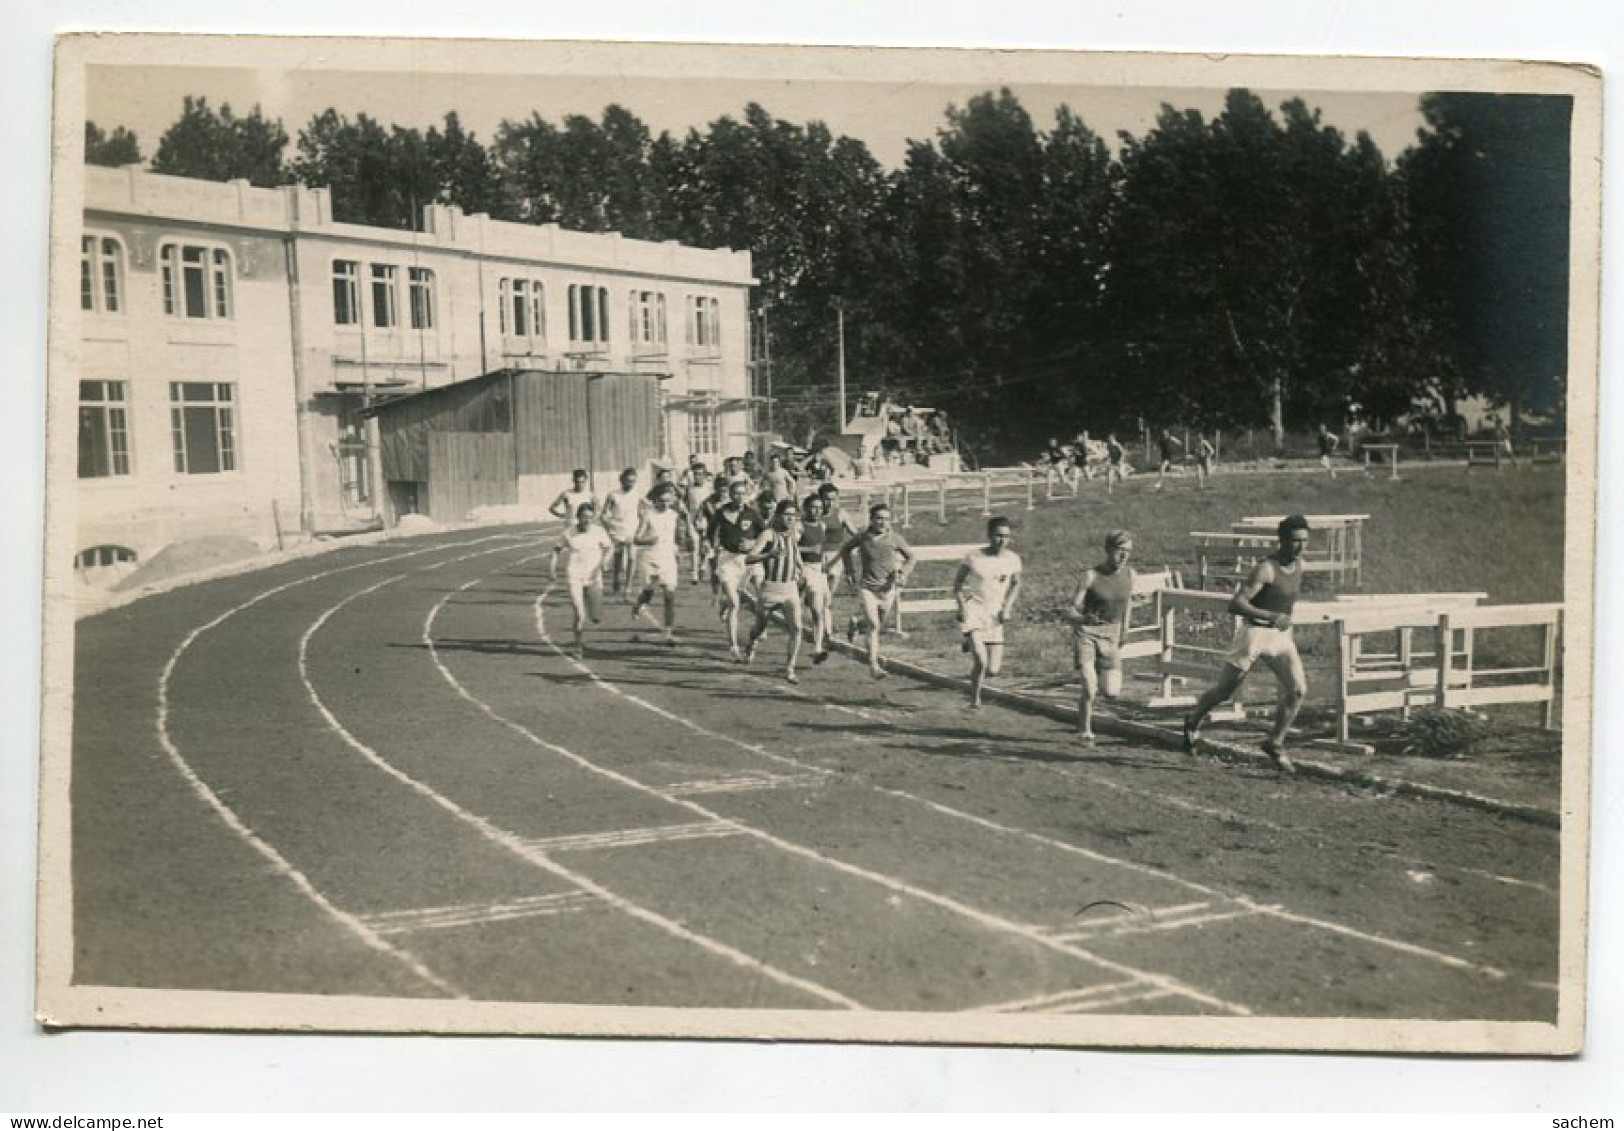 ATHLETISME CARTE PHOTO  Une Course Coureurs Tour De Piste 1930  D18 2022  - Athlétisme